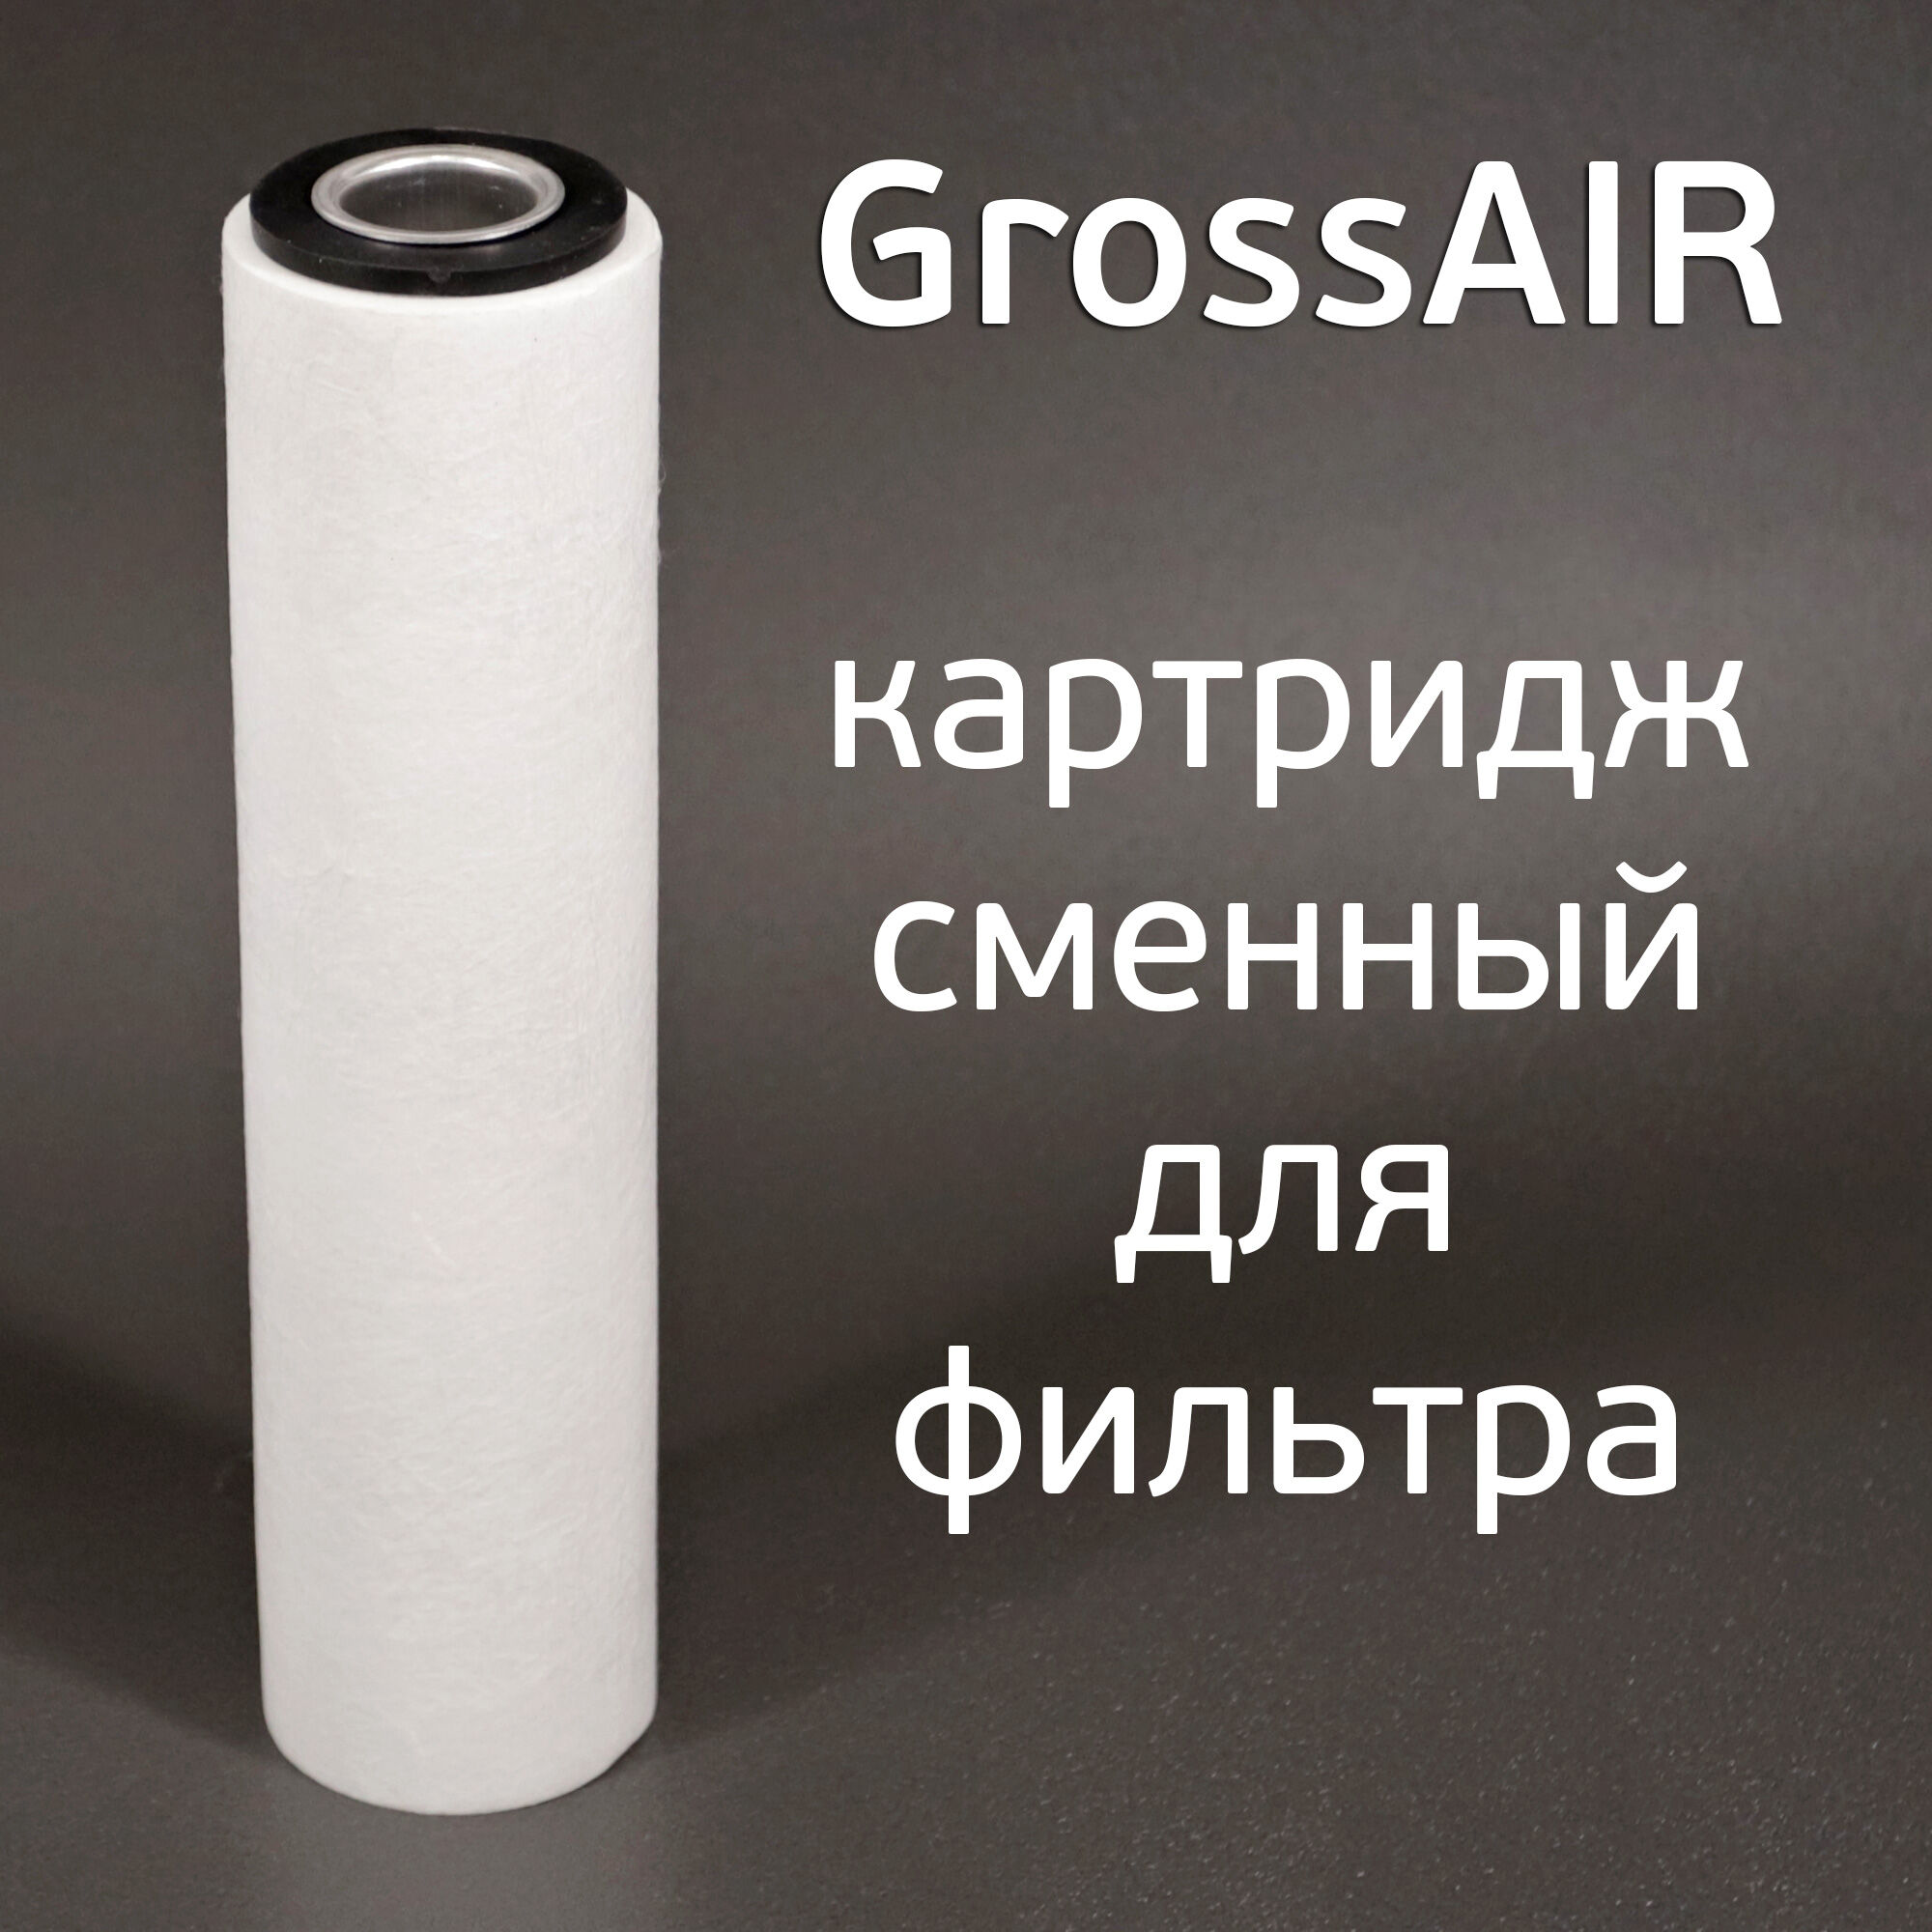 Картридж сменный для GrossAIR (D 63, H 250мм) фильтрующий элемент для фильтра сжатого воздуха